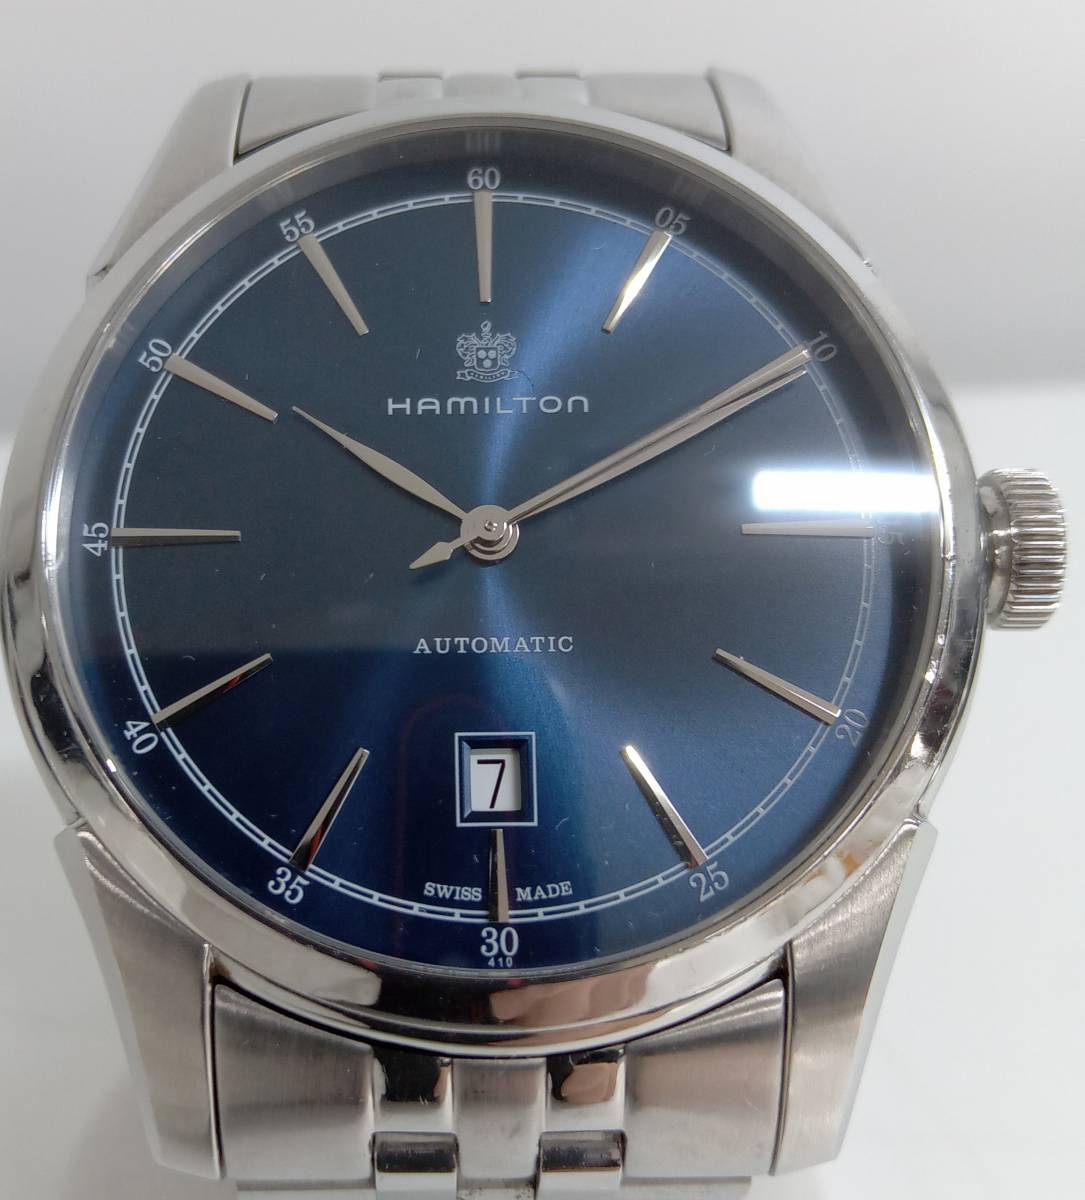 HAMILTON ハミルトン H424151 腕時計 メンズ 自動巻き vineair.com